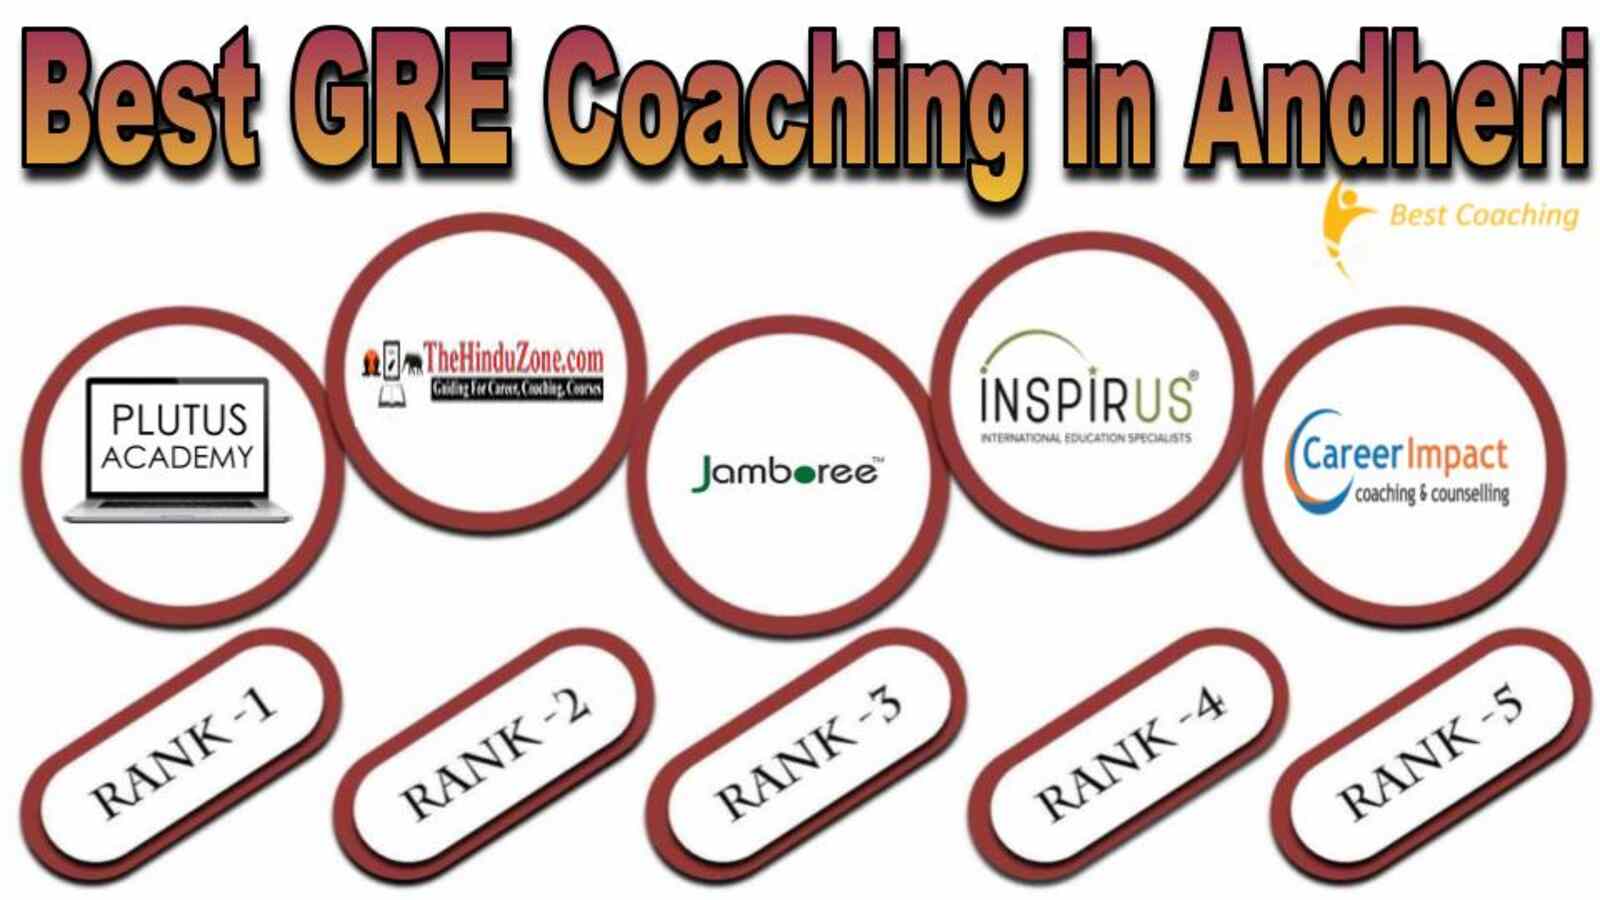 Best GRE coaching in Andheri